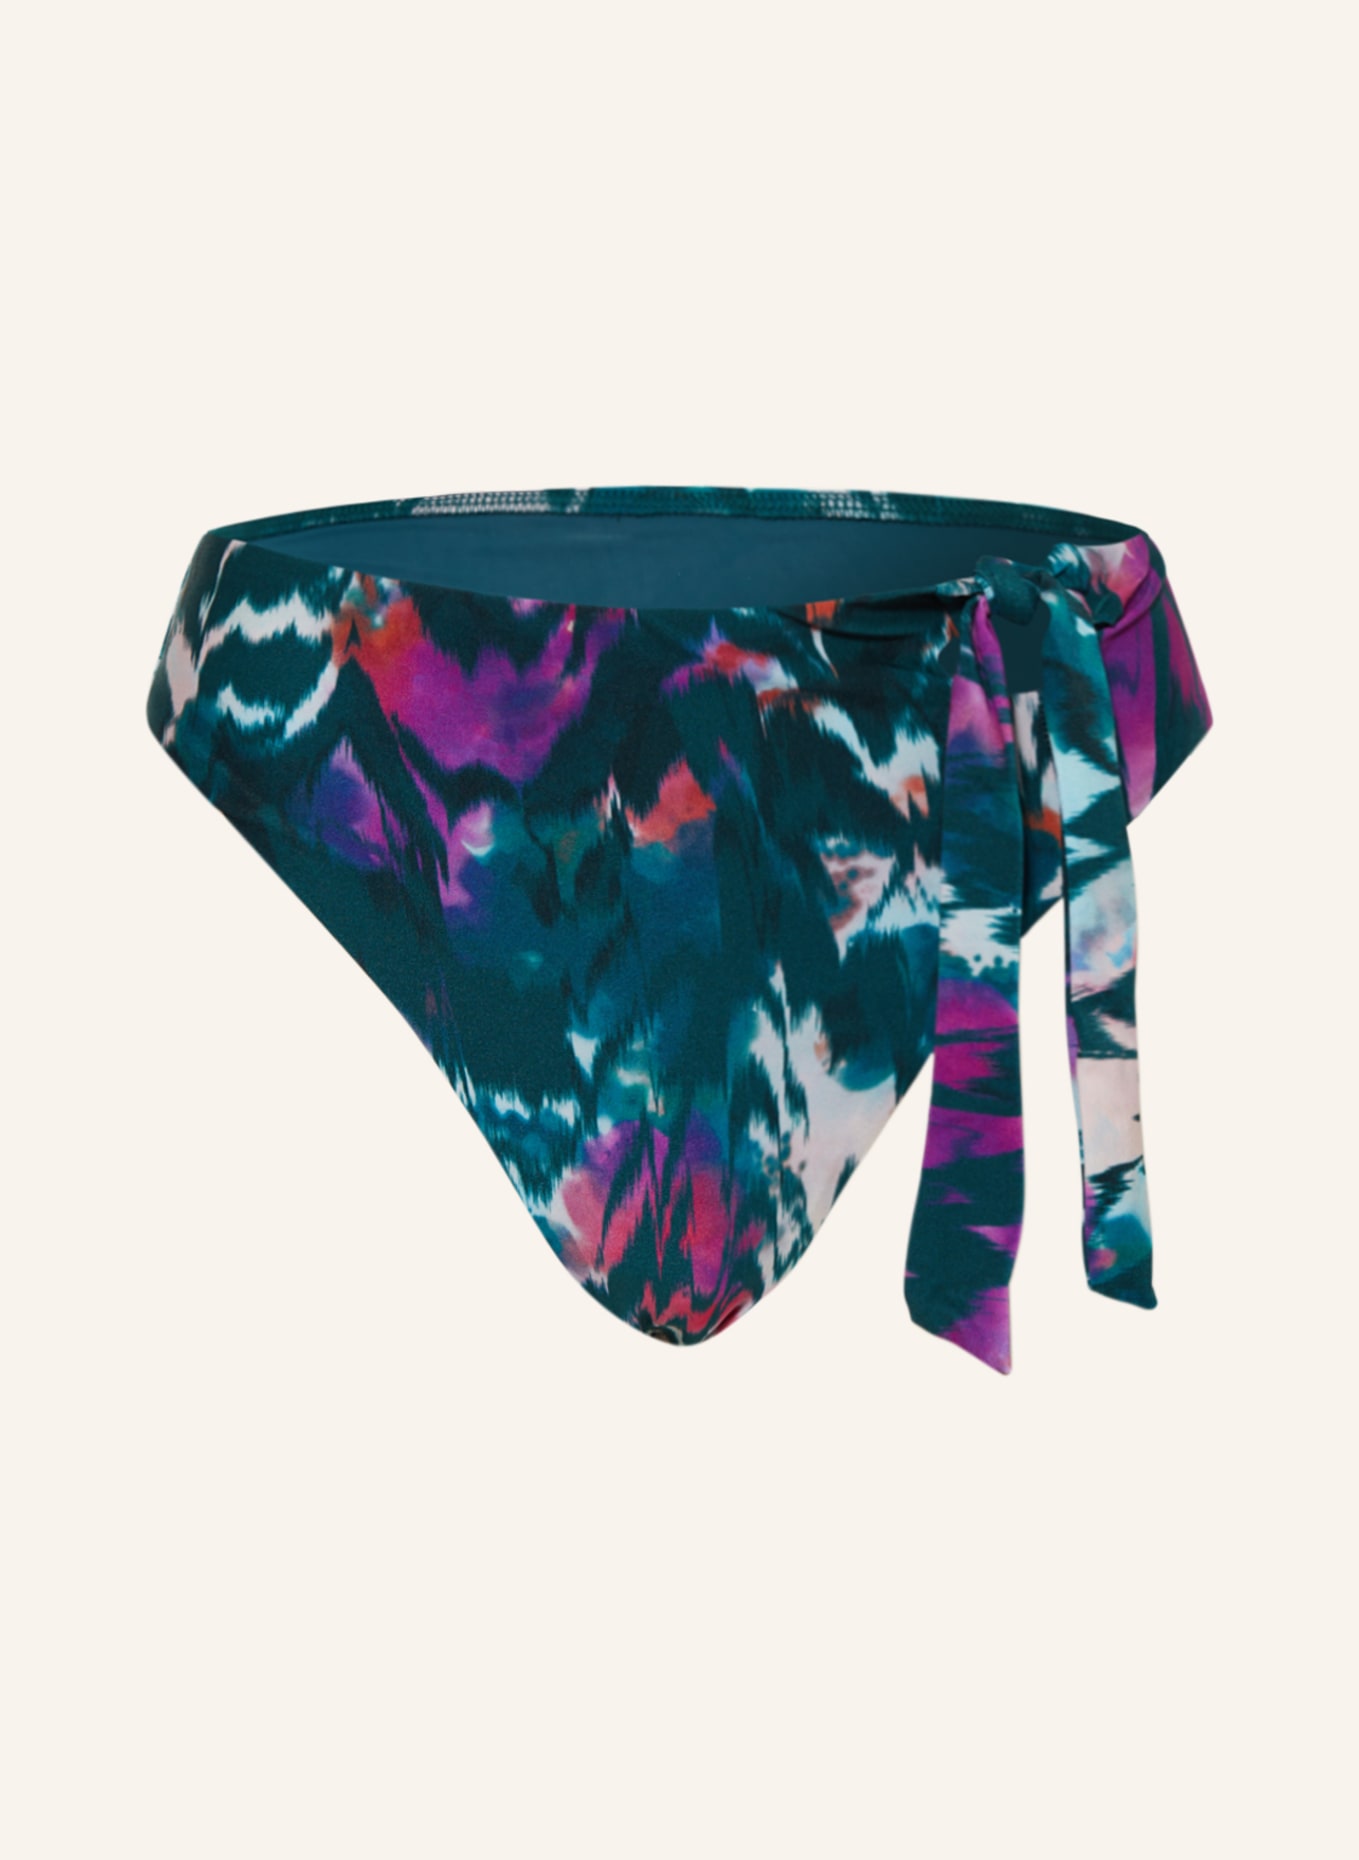 CYELL High waist bikini bottoms IKAT TEAL, Color: TEAL/ PURPLE/ LIGHT PINK (Image 1)